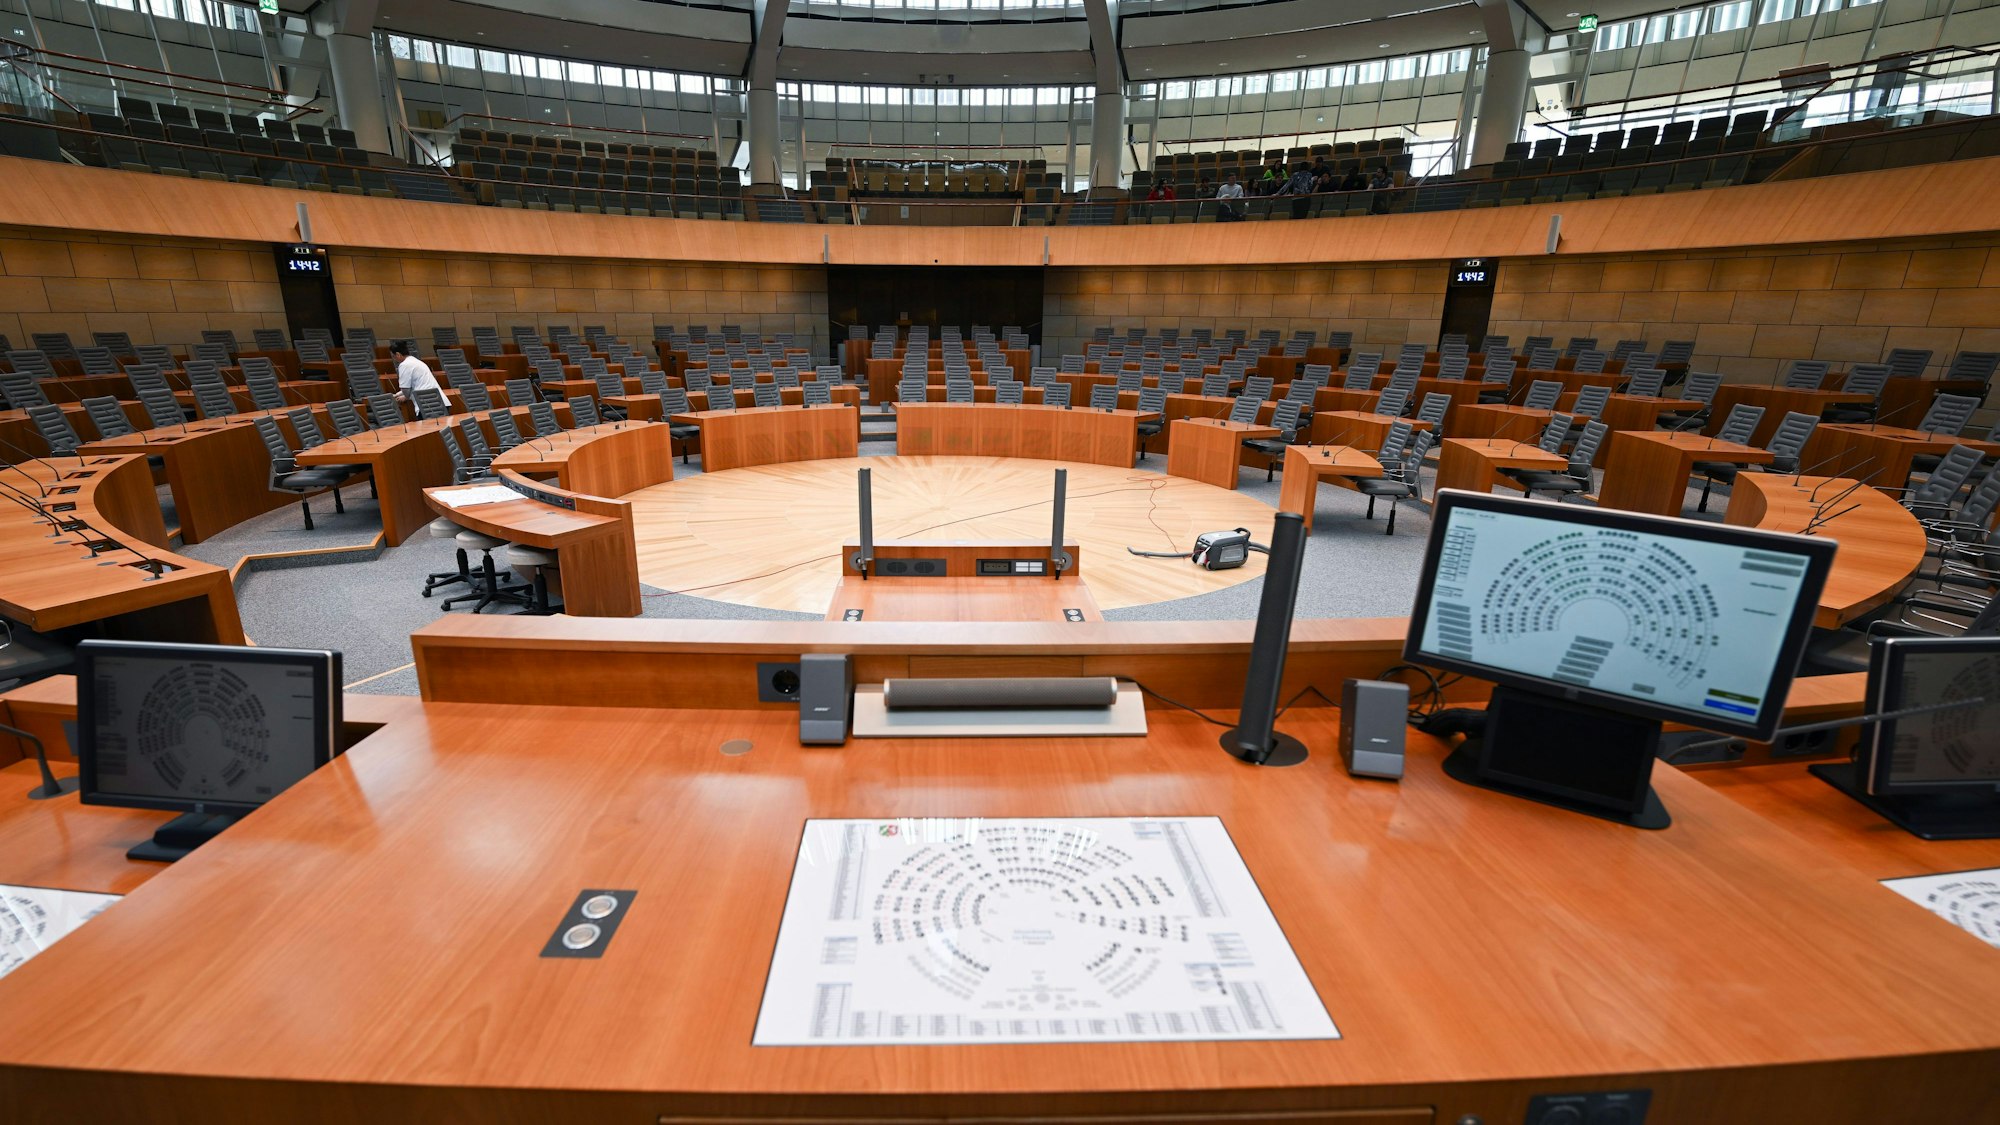 Zu sehen ist der Plenarsaal im nordrhein-westfälischen Landtag.Die Sitze sind leer, zentral steht ein Rednerpult.